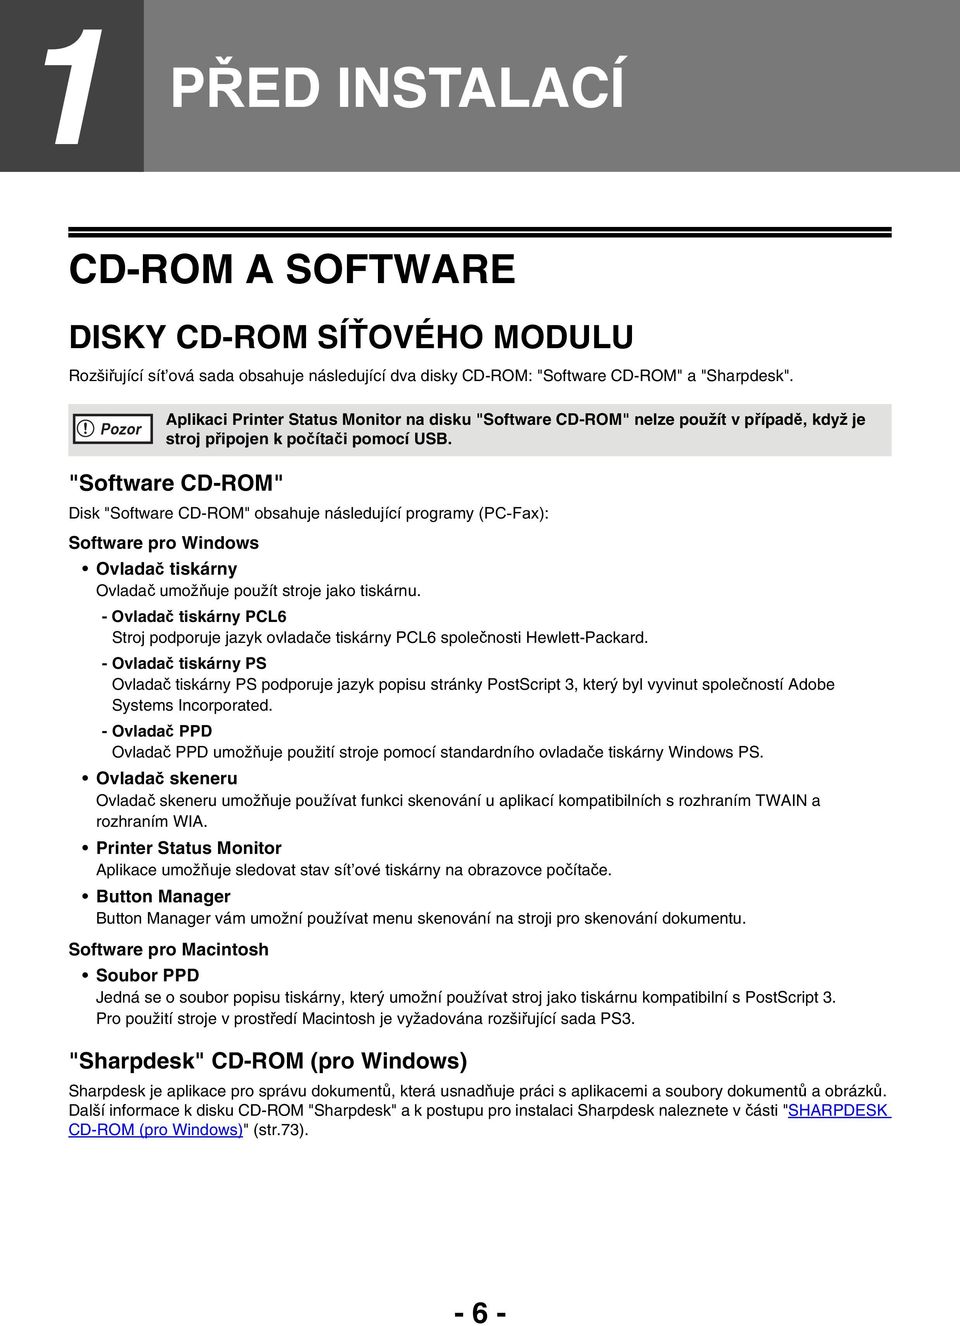 "Software CD-ROM" Disk "Software CD-ROM" obsahuje následující programy (PC-Fax): Software pro Windows Ovladač tiskárny Ovladač umožňuje použít stroje jako tiskárnu.